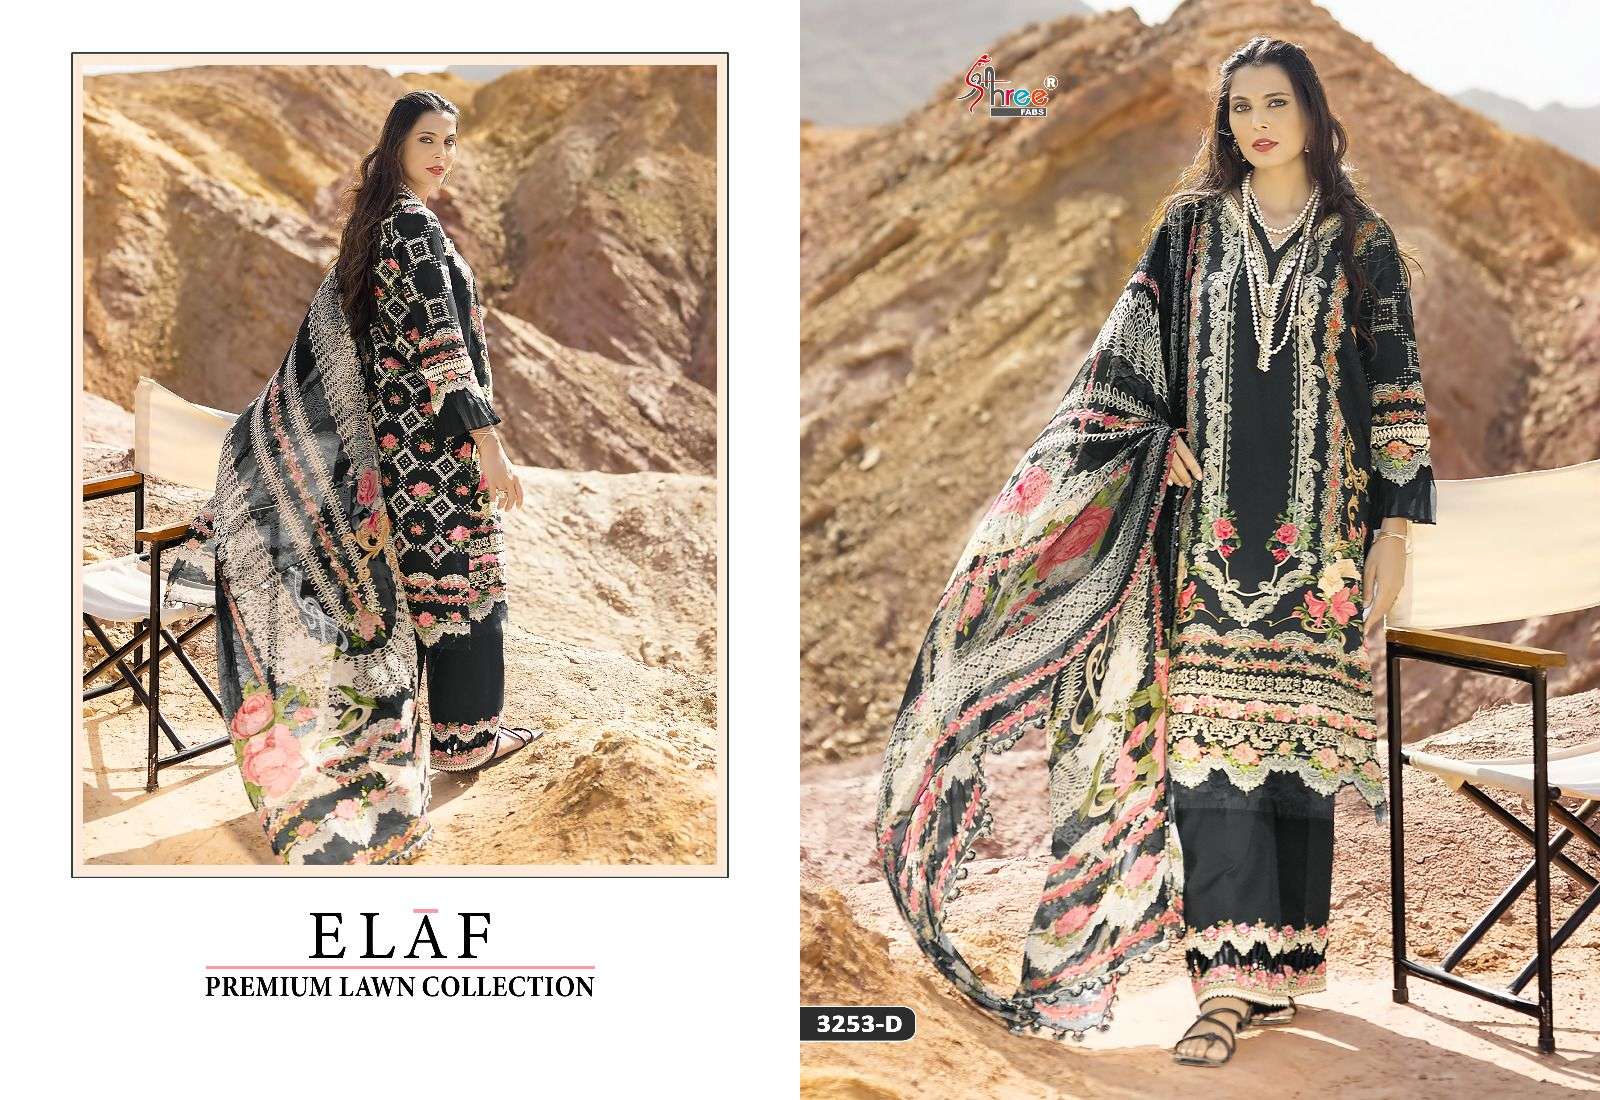 Shree Fabs Elaf Premium Lawn Collection 3253 Colour Series fancy Designer Pakistani Suit Wholesaler Surat Gujarat